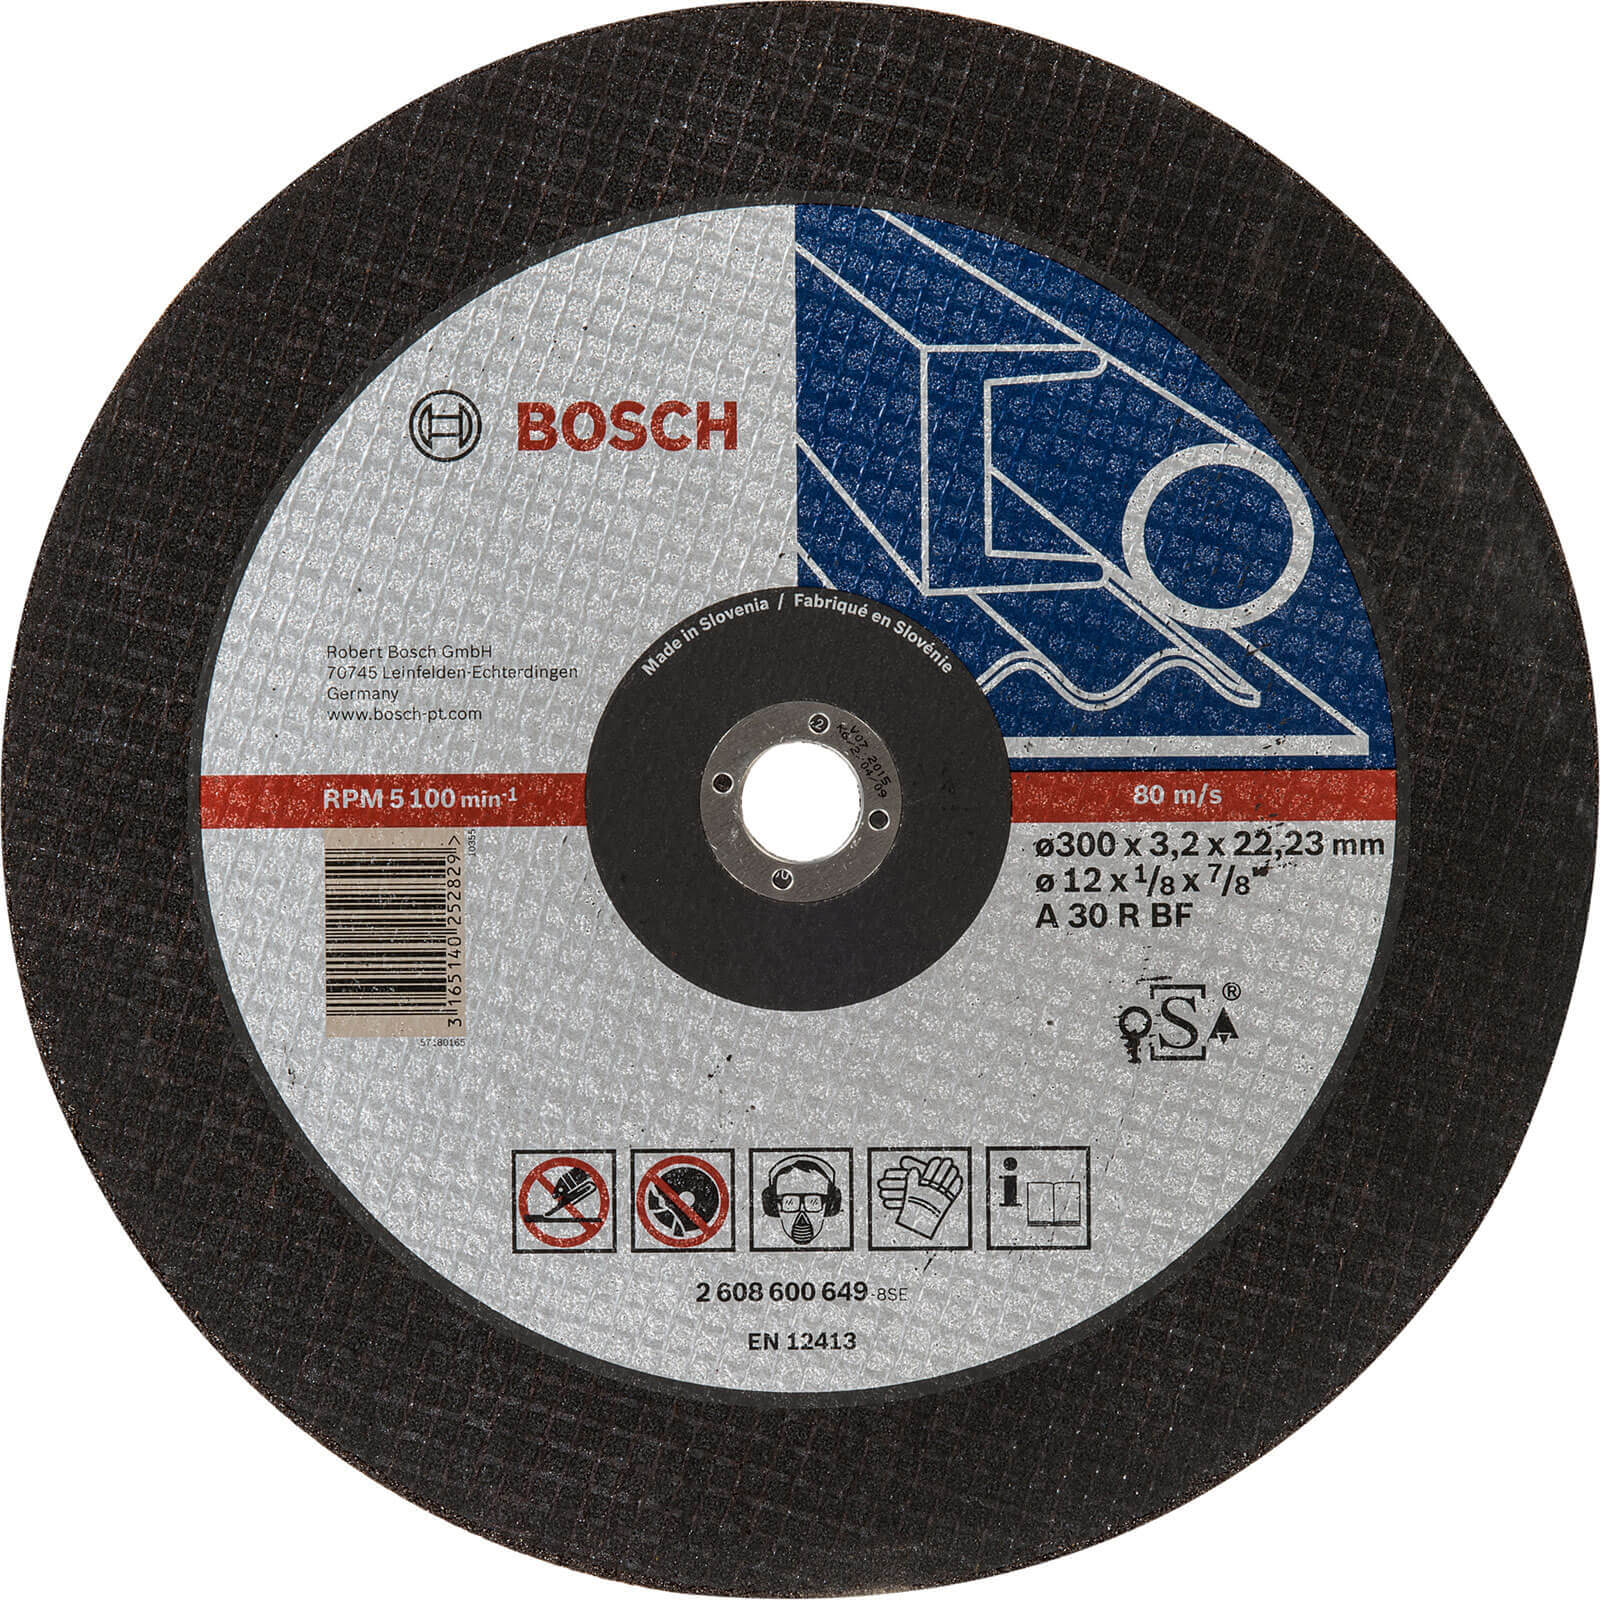 Bosch Expert A30S BF Flat Metal Cutting Disc 300mm